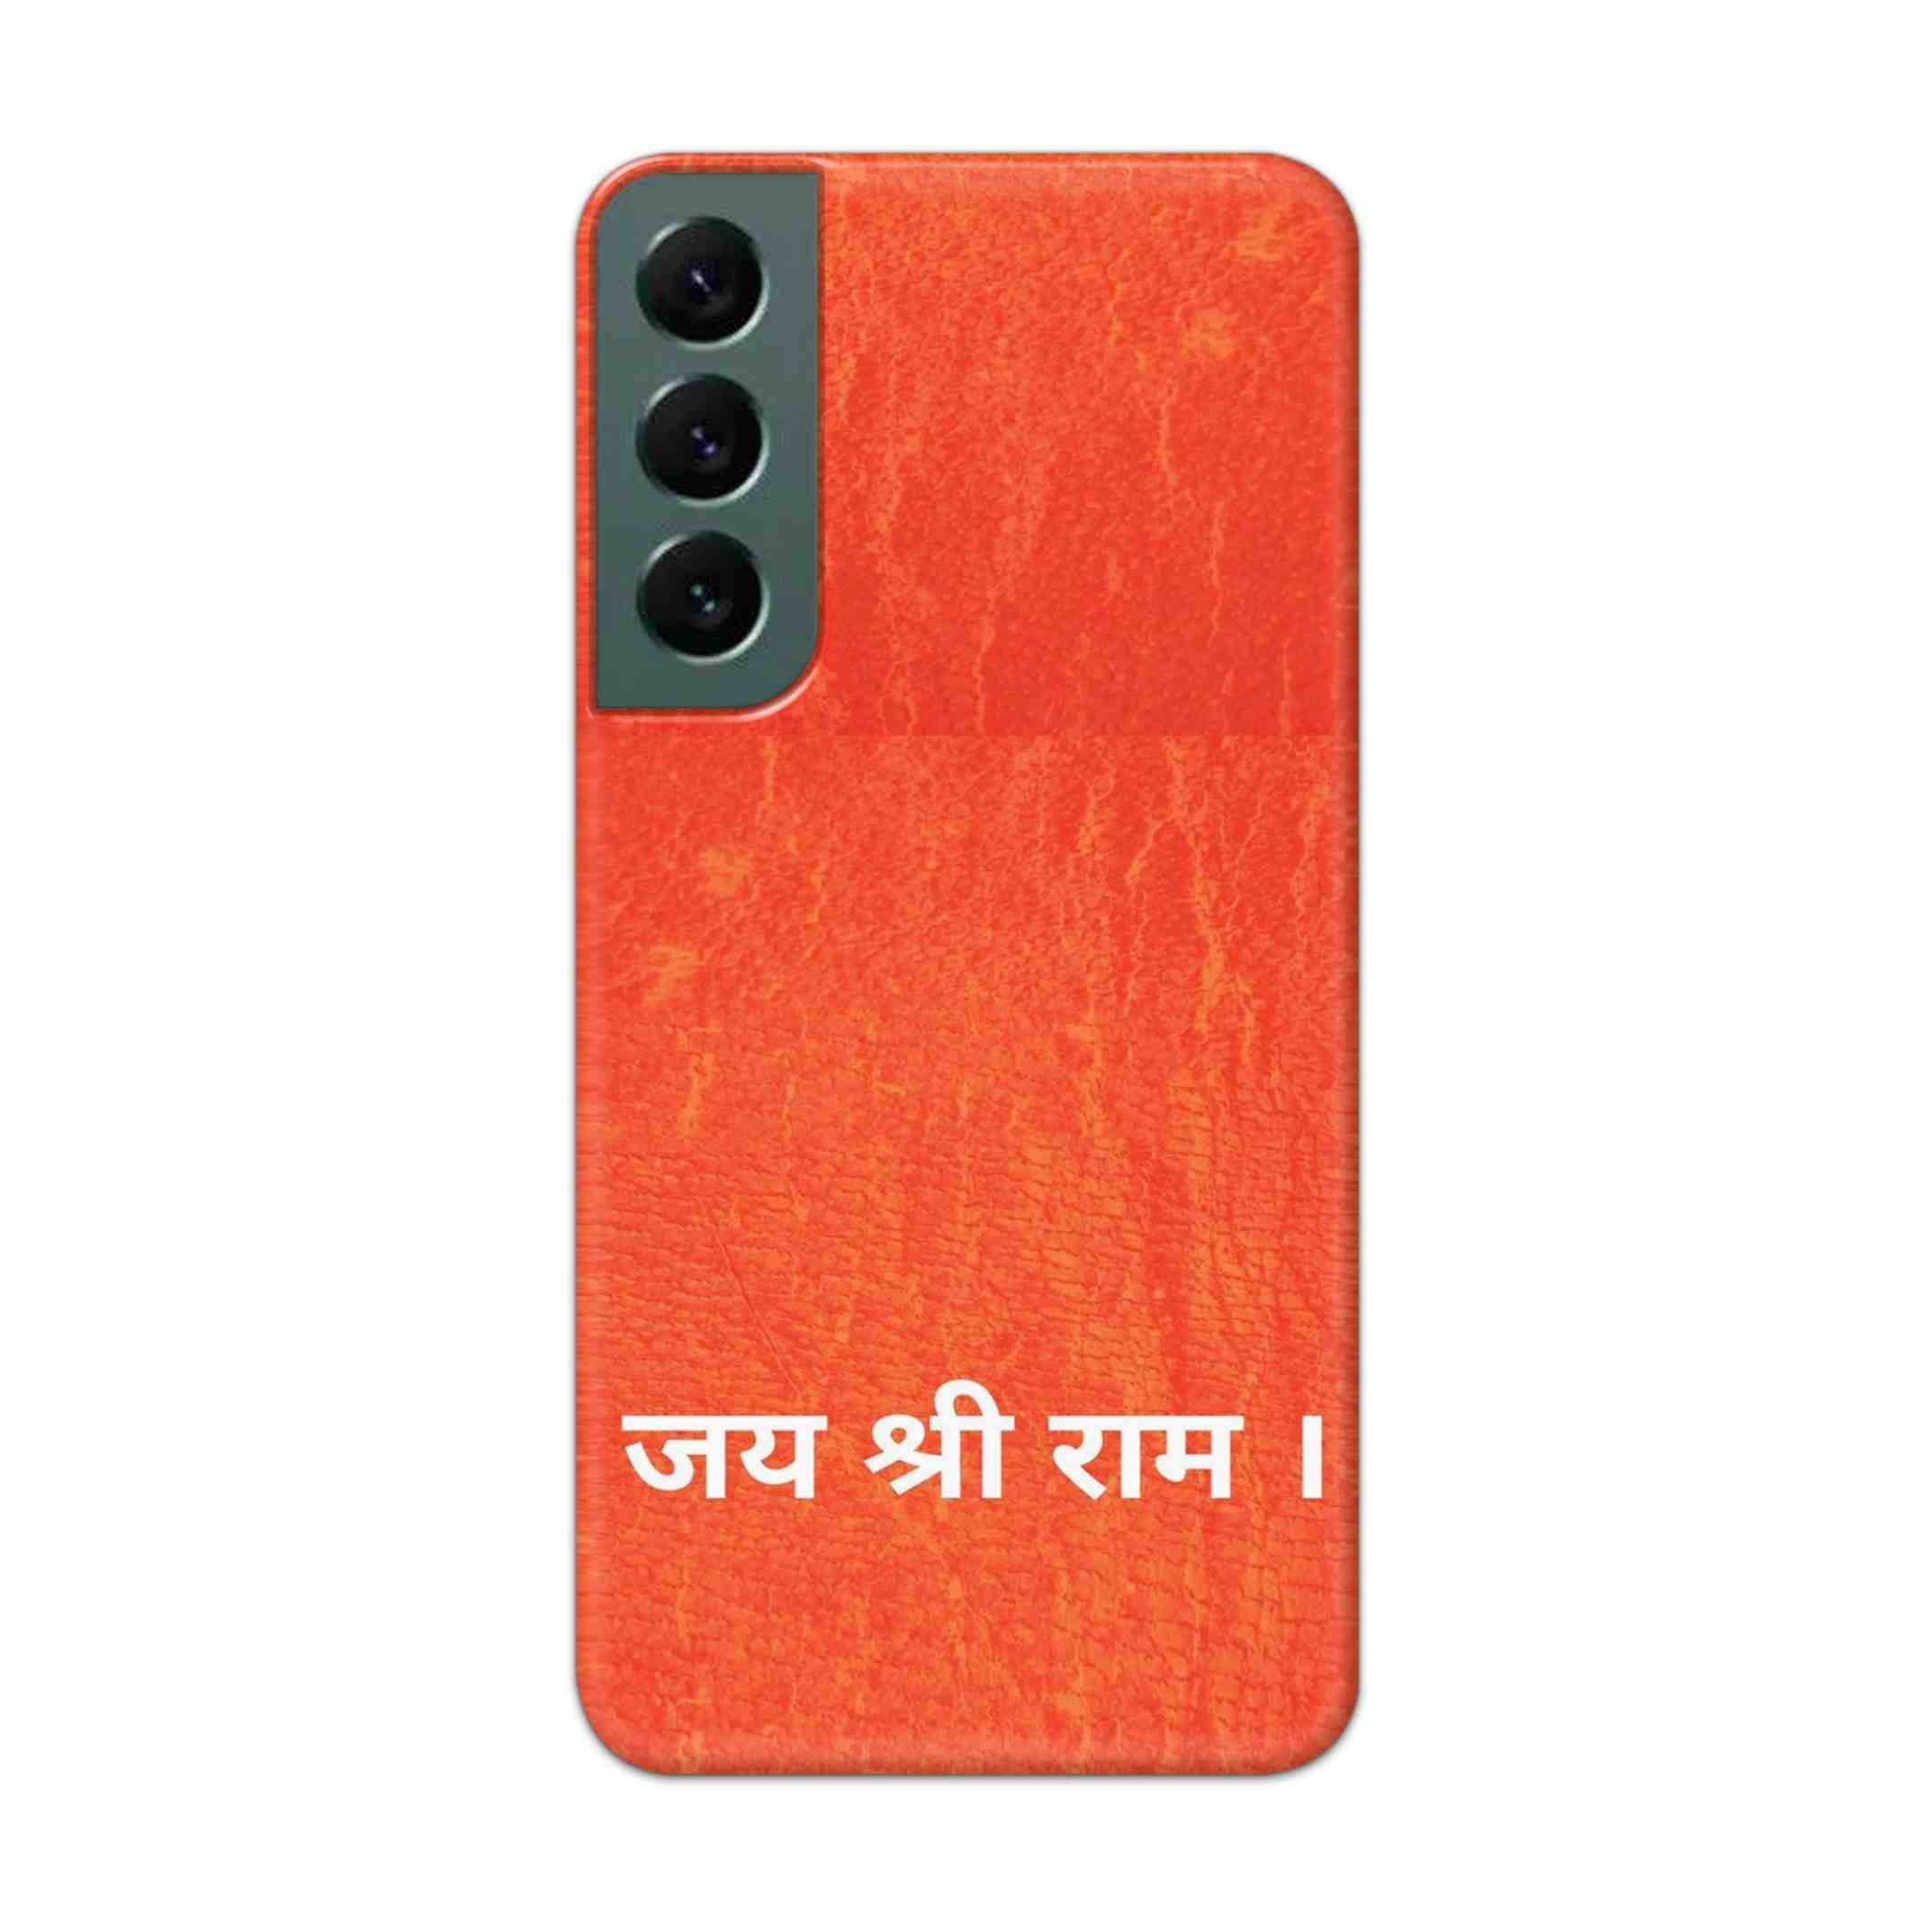 Buy Jai Shree Ram Hard Back Mobile Phone Case Cover For Samsung S22 Online